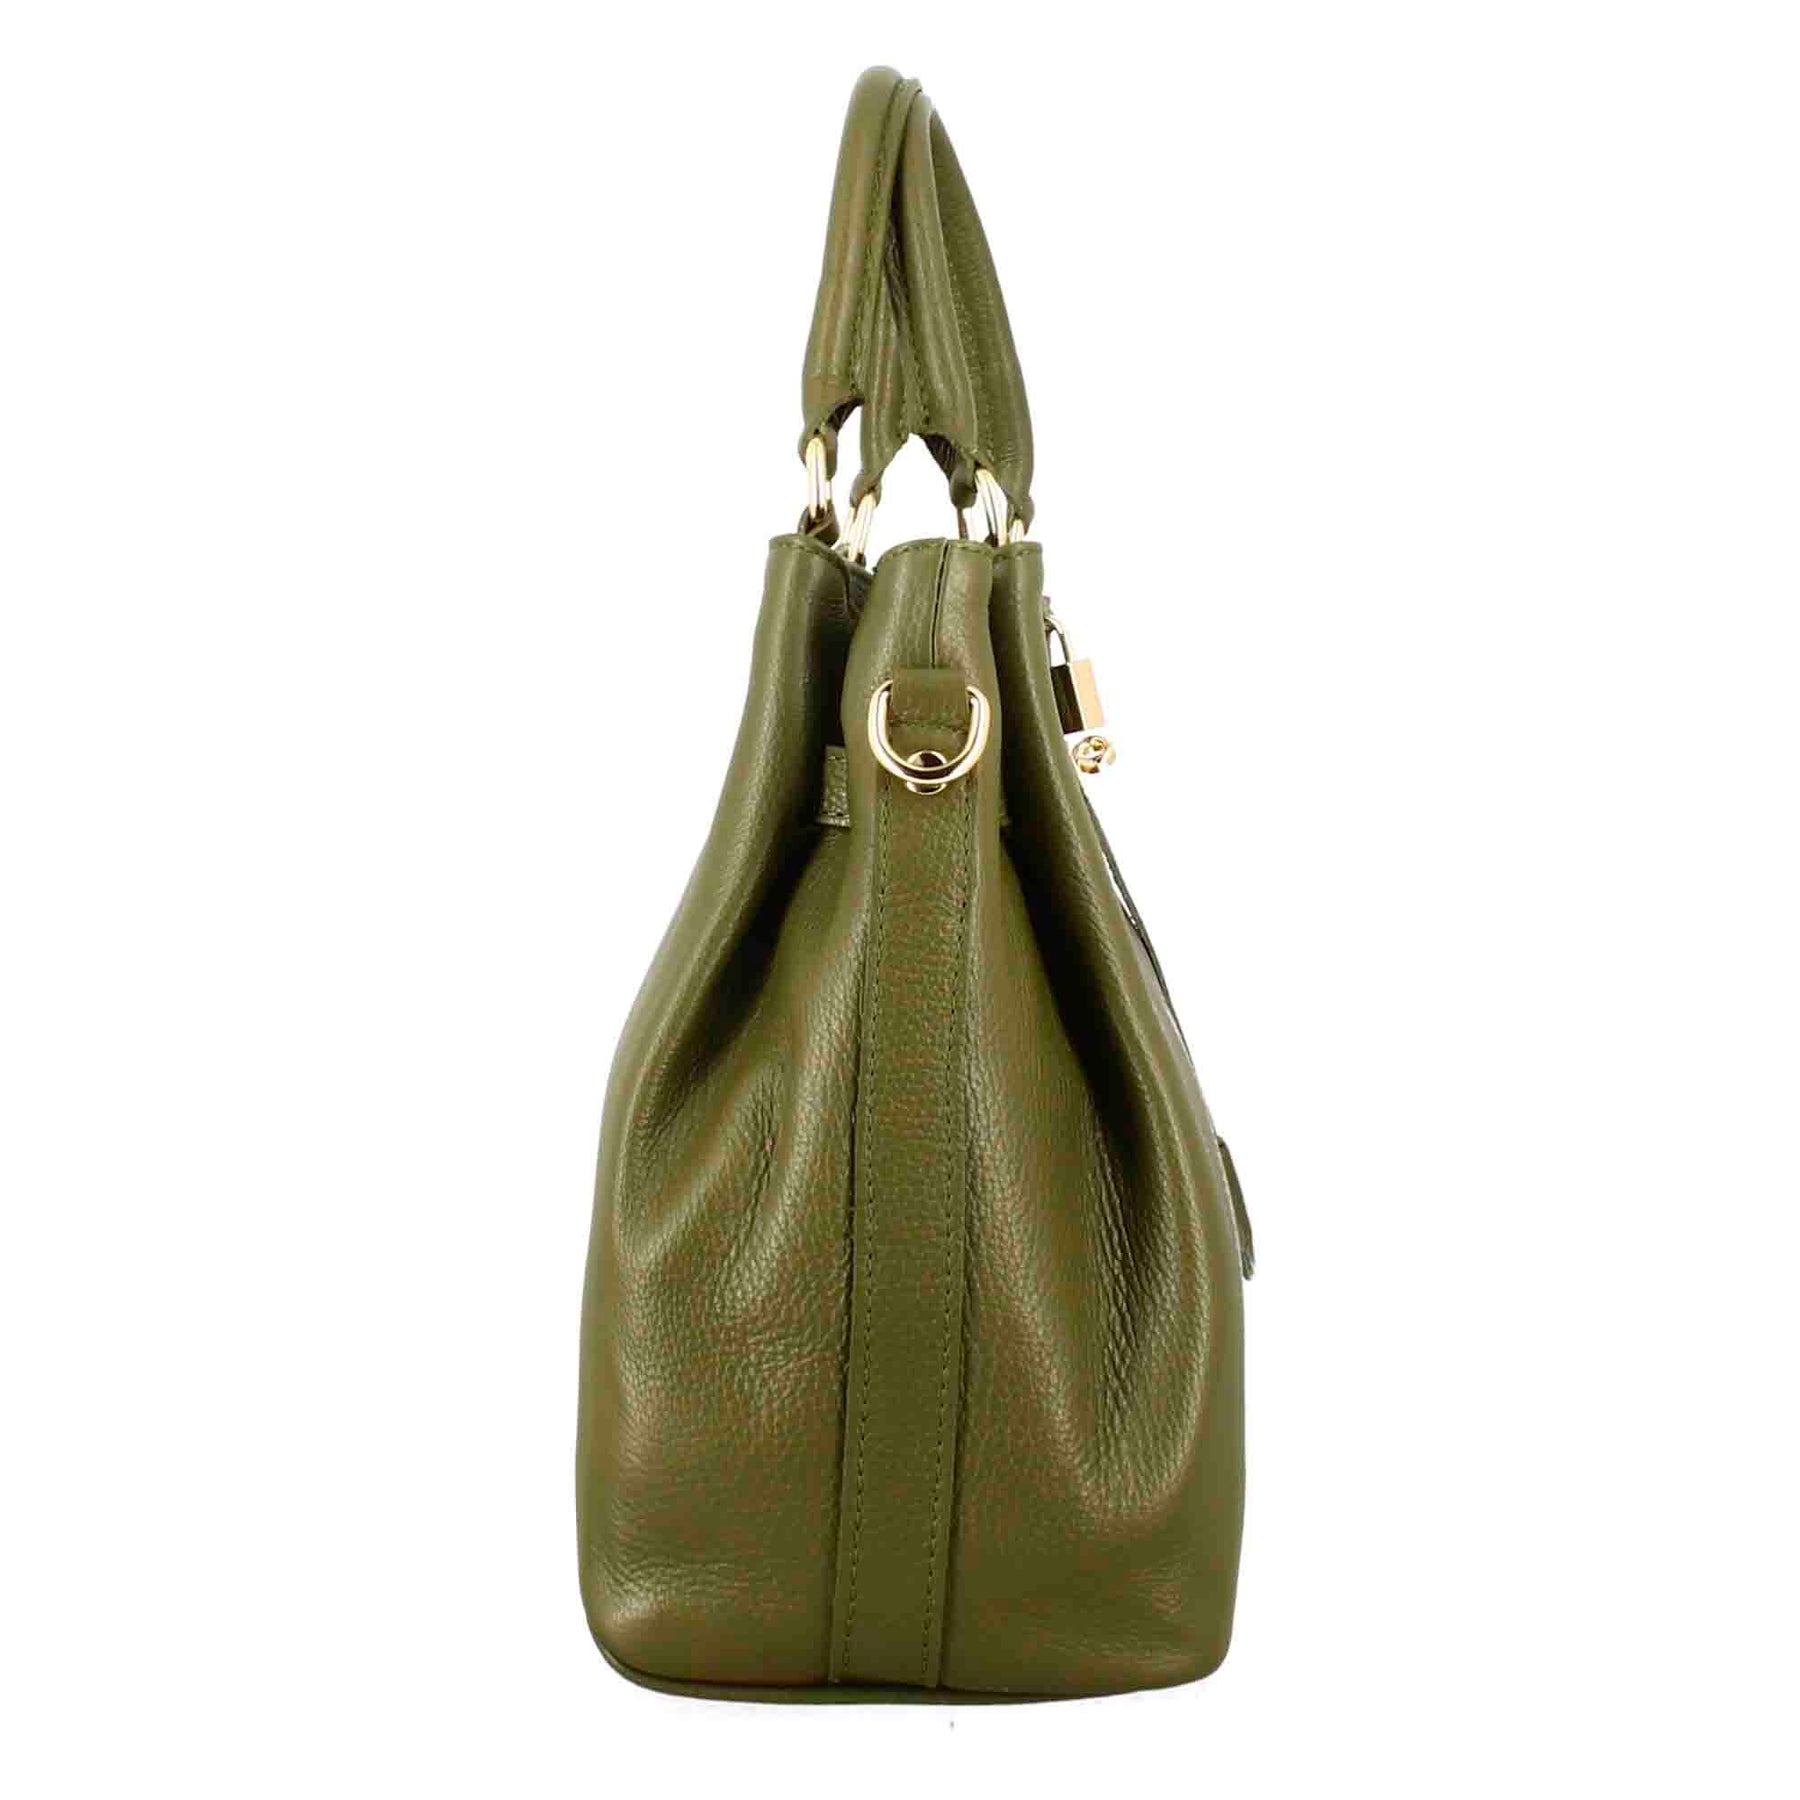 Frida leather handbag with removable green shoulder strap